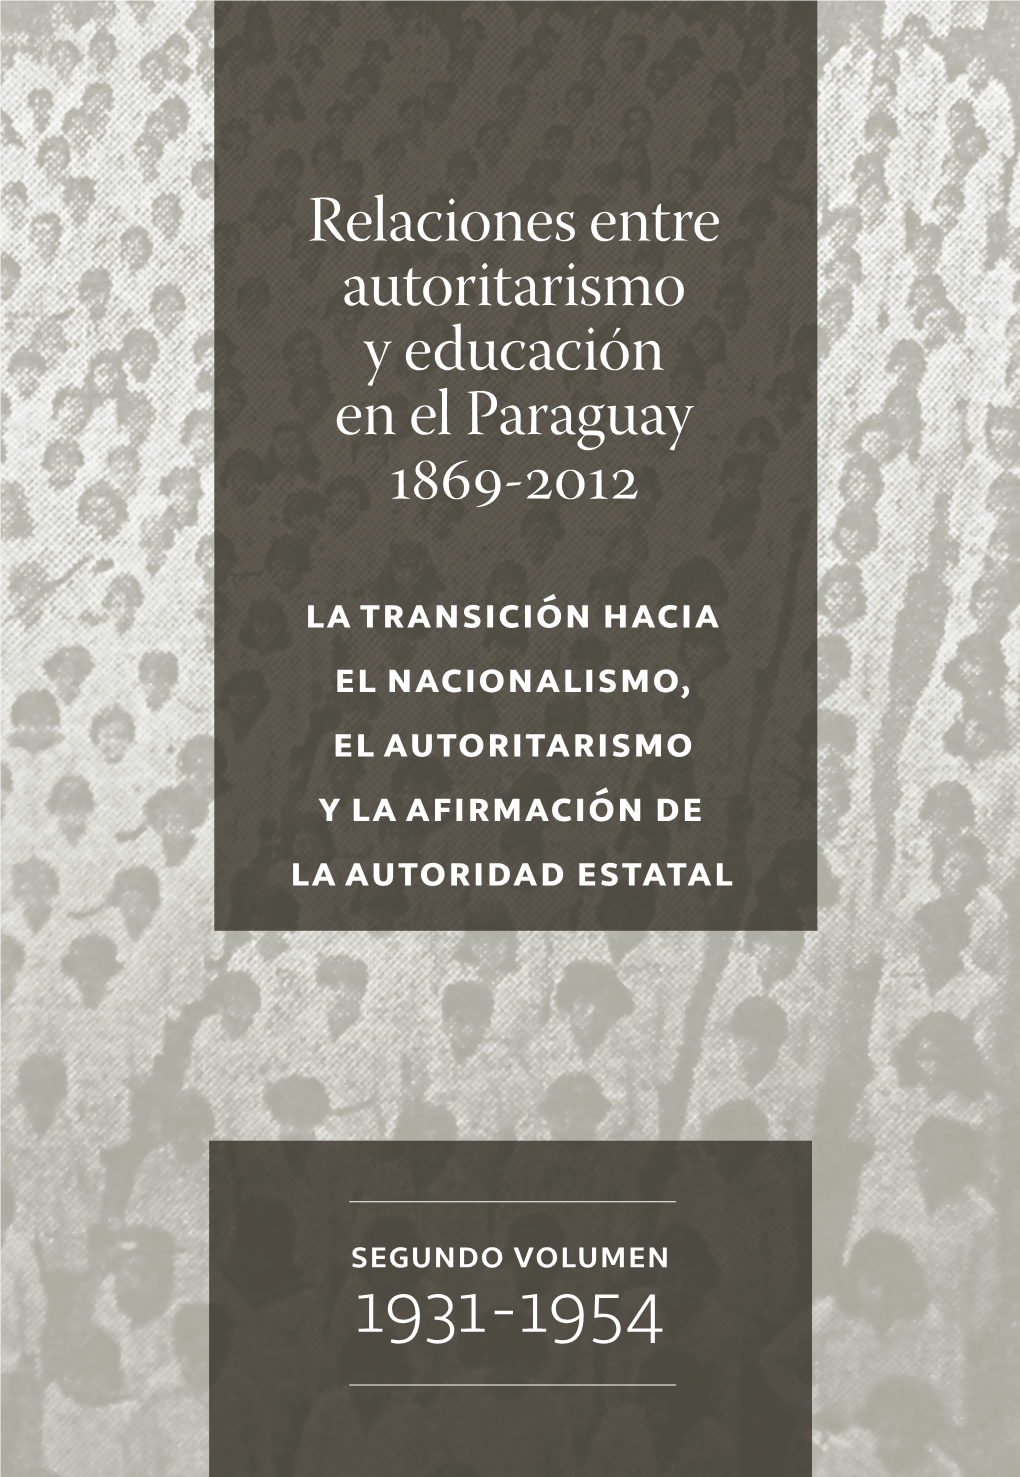 Relaciones Entre Autoritarismo Y Educación En El Paraguay 1869-2012 La Transición Hacia El Nacionalismo, El Autoritarismo Y La Afirmación De La Autoridad Estatal